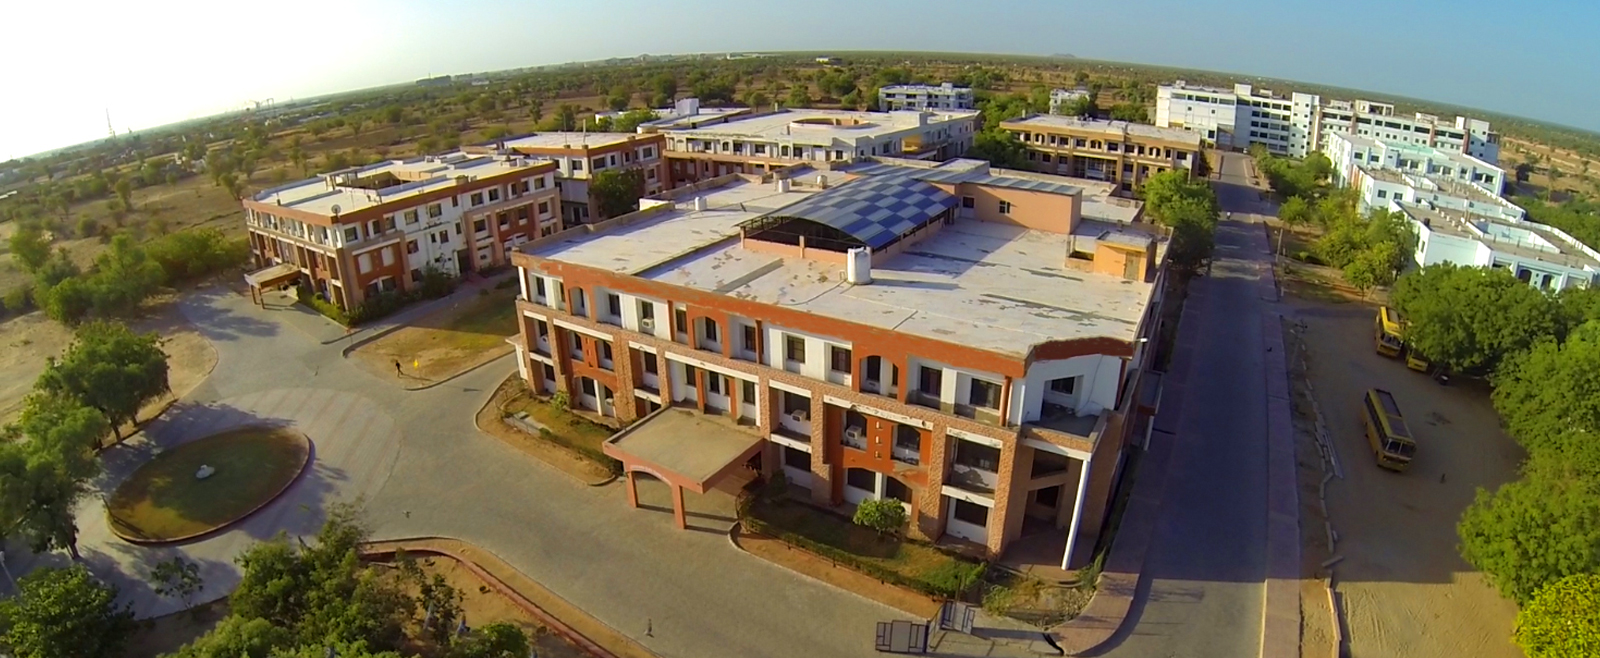 Jodhpur National University Image